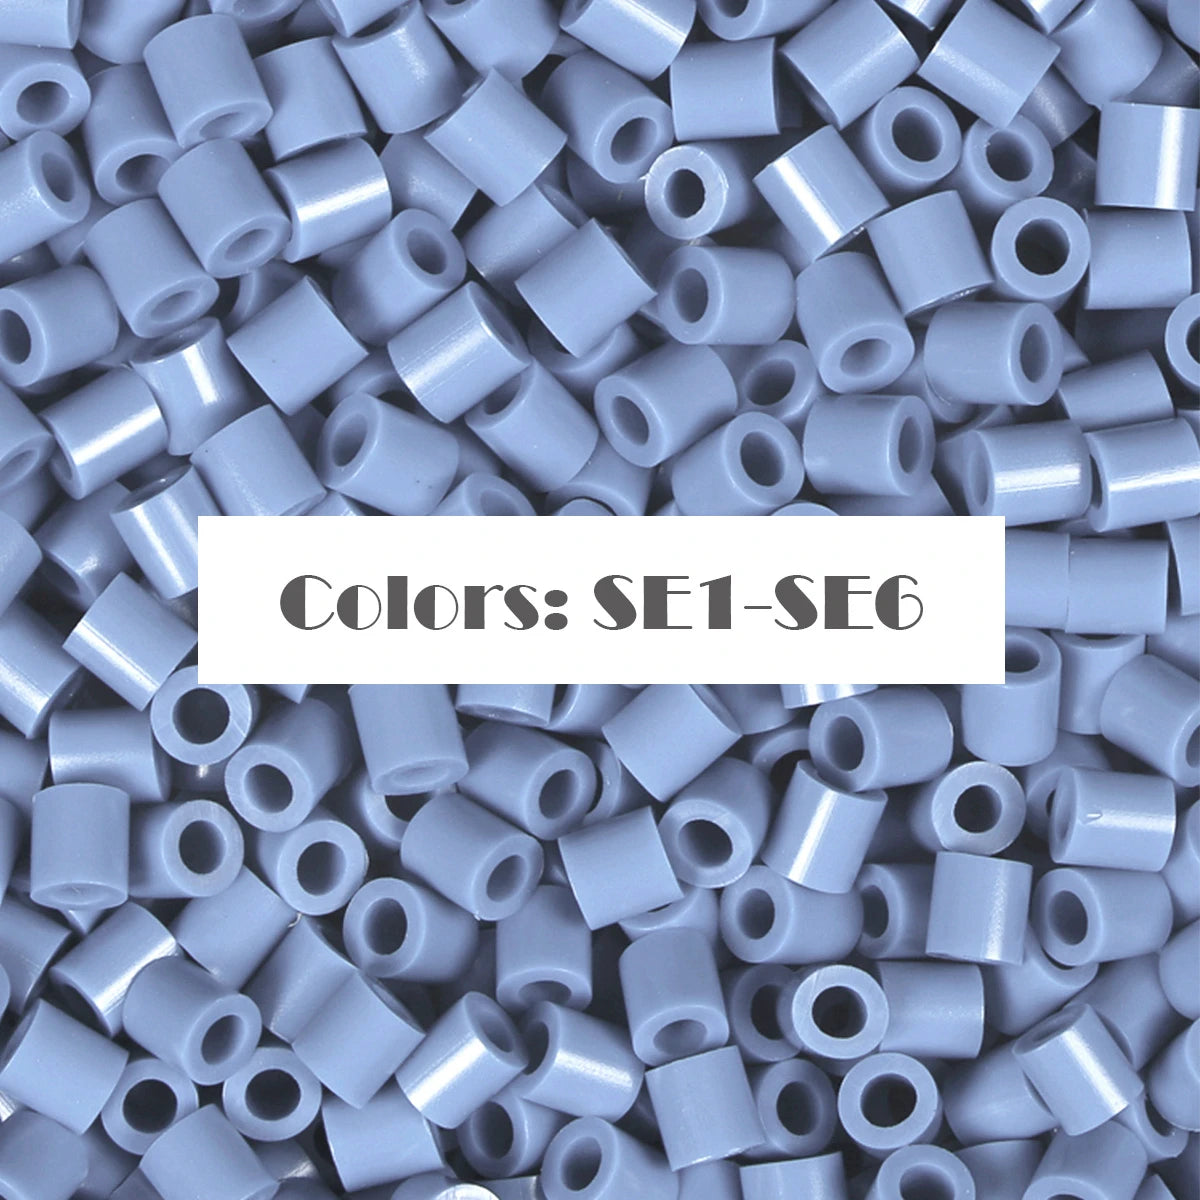 (SE1-SE6) سلسلة اللون الجديدة Blue S-1KG بكميات كبيرة